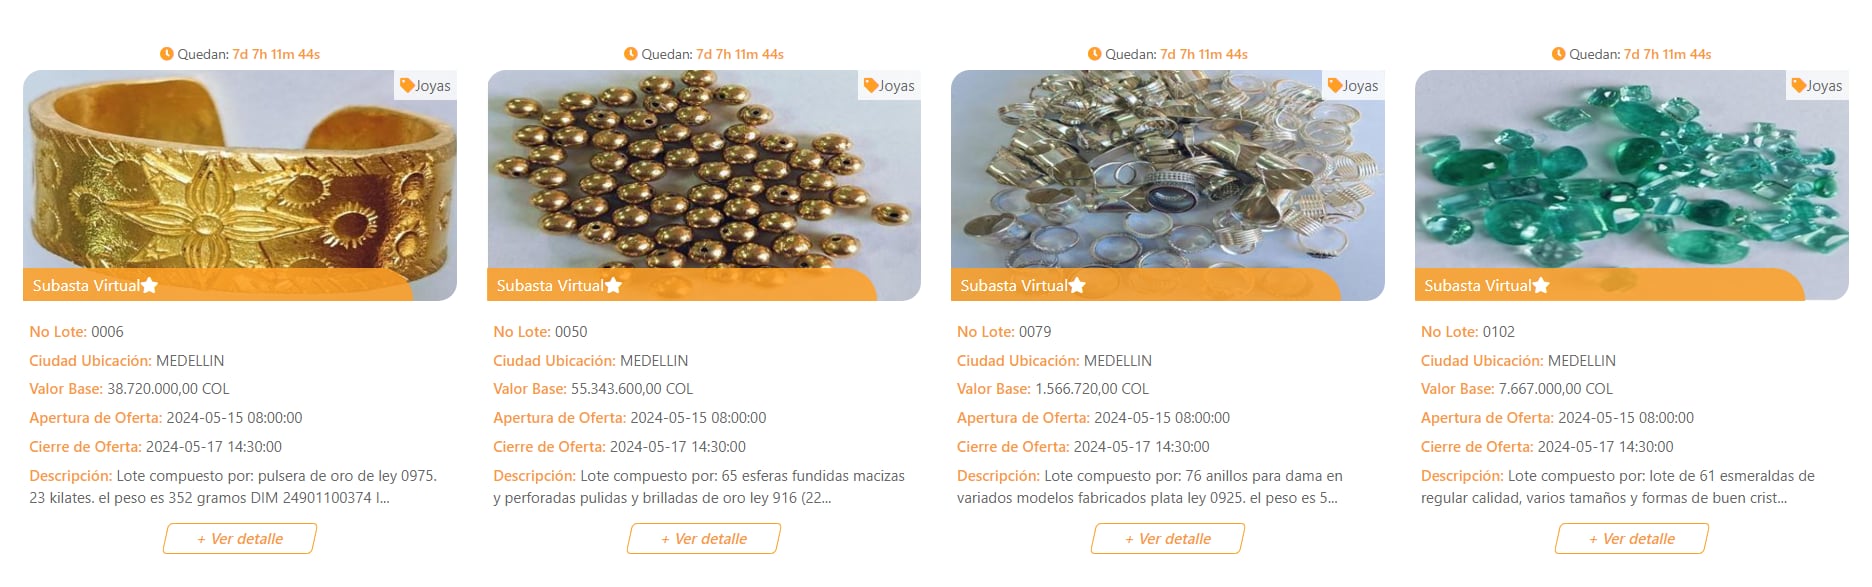 En el sitio web El Martillo se podrán inscribir y hacer las ofertas de la subasta de joyas de la Dian - crédito www.elmartillo.com.co